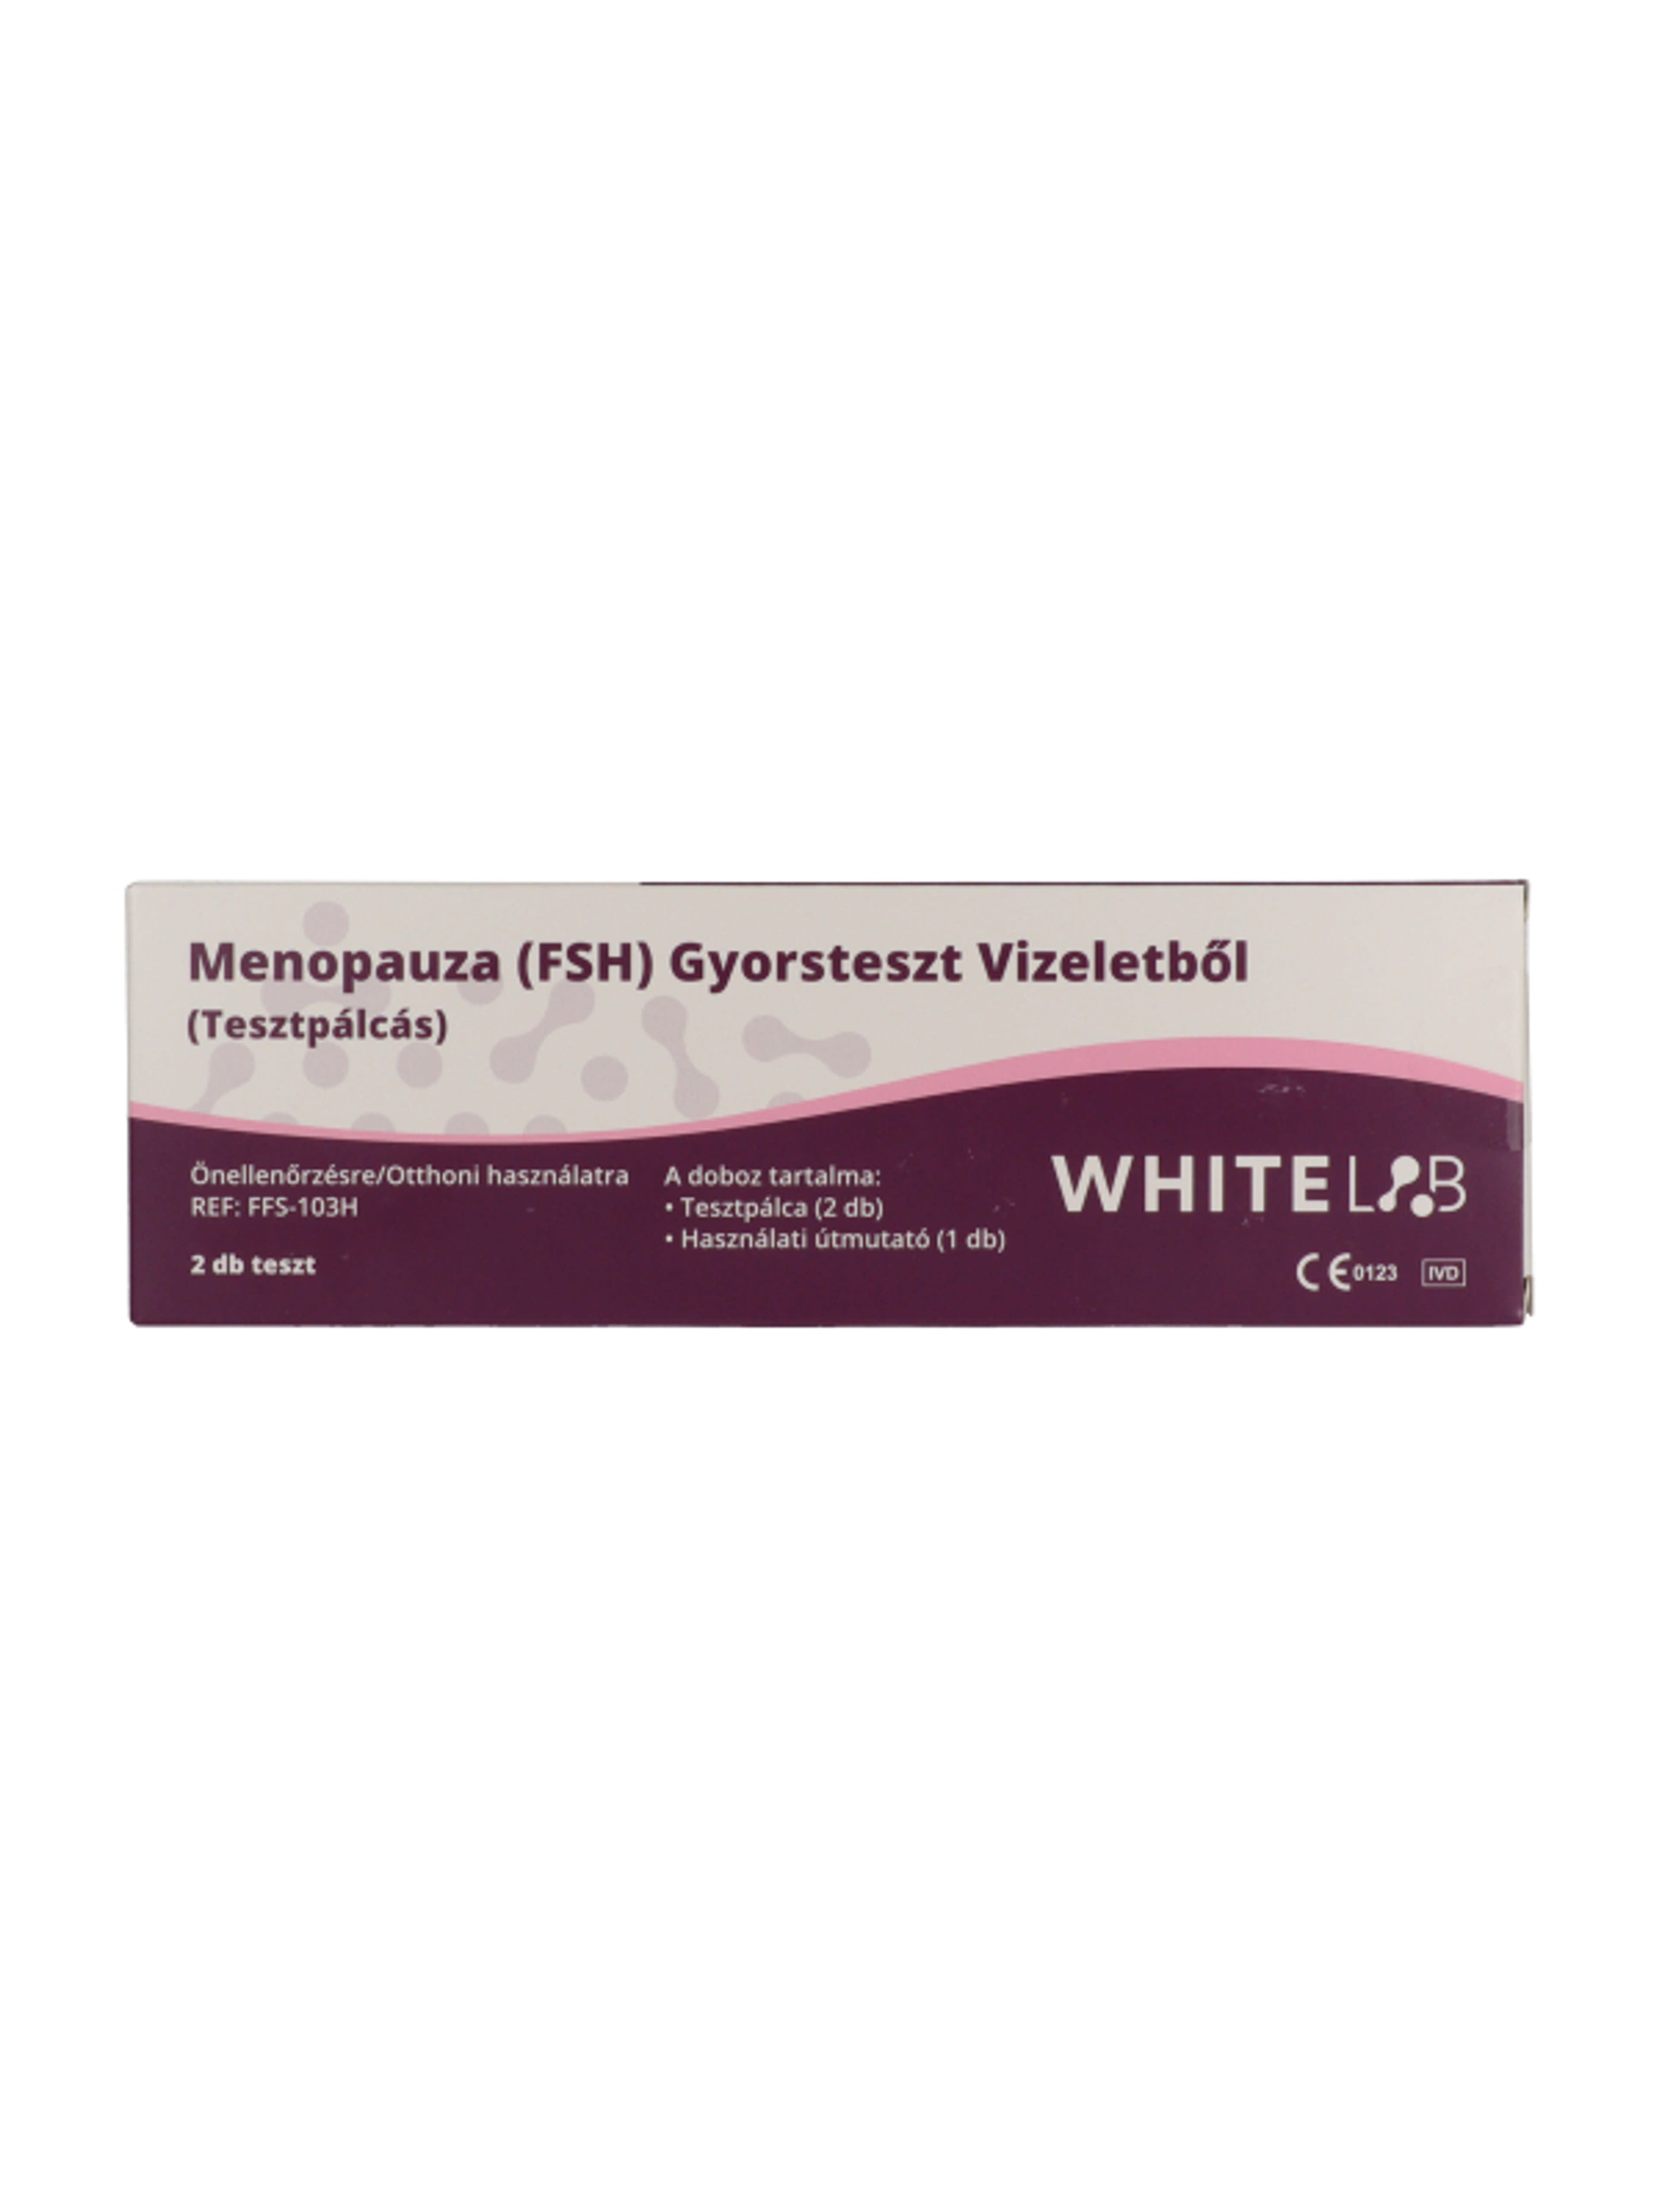 Whitelab menopauza gyorsteszt vizeletből - 2 db